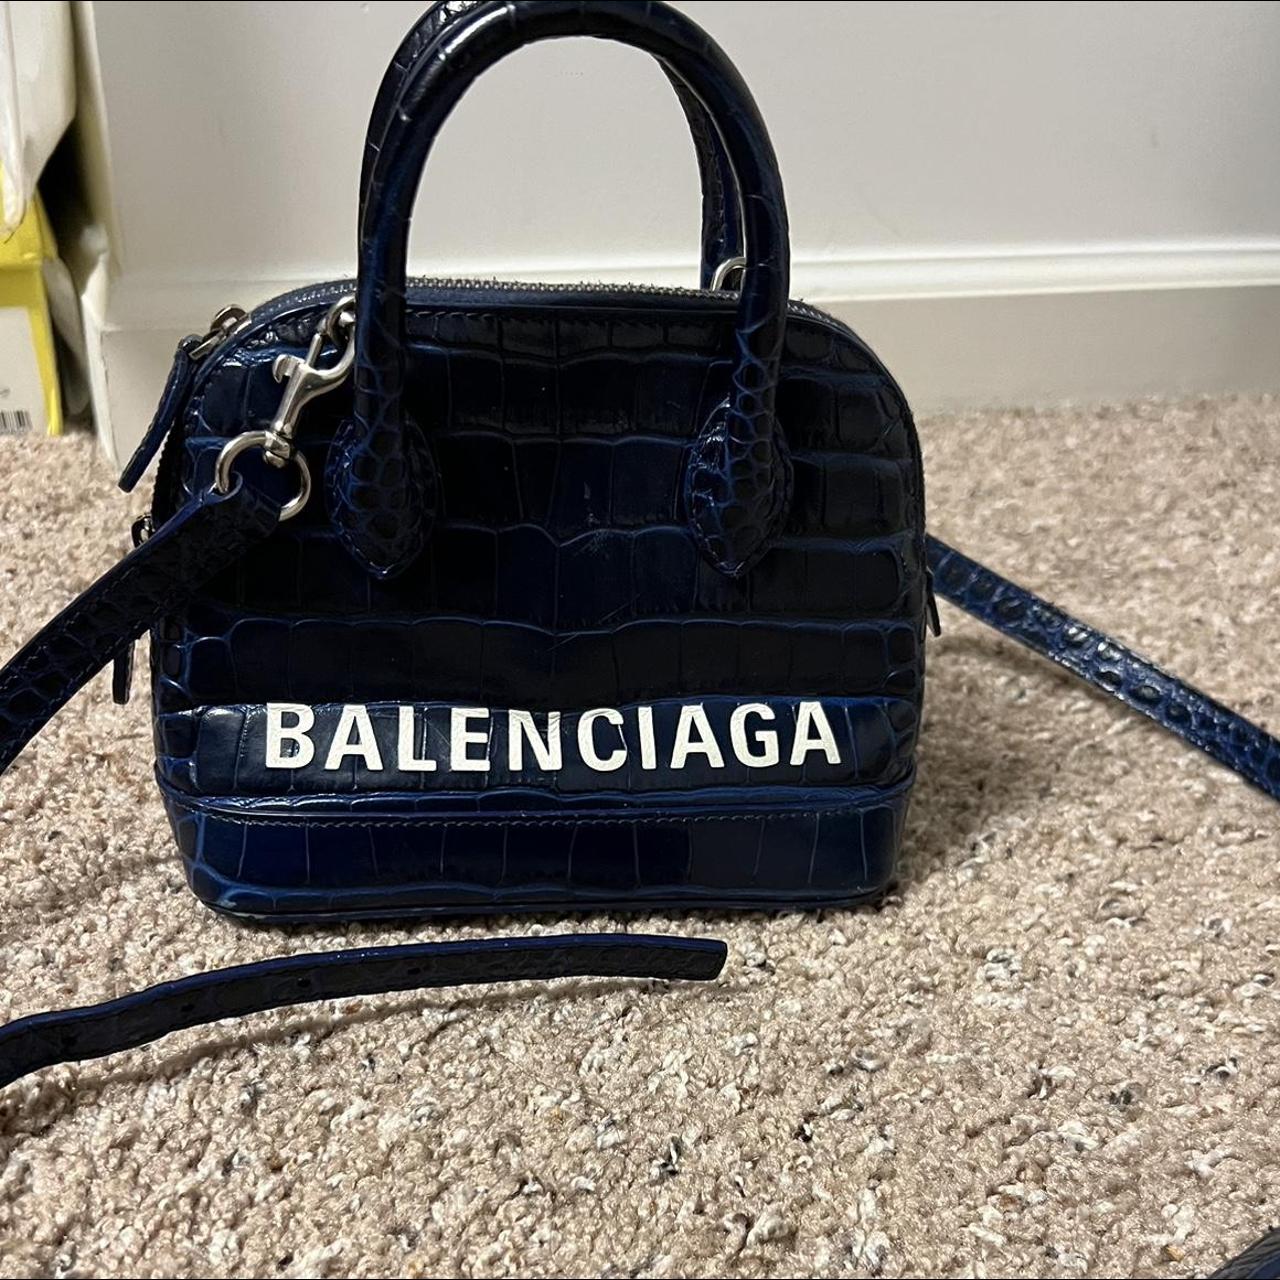 Balenciaga Women's Navy and Blue Bag (2)